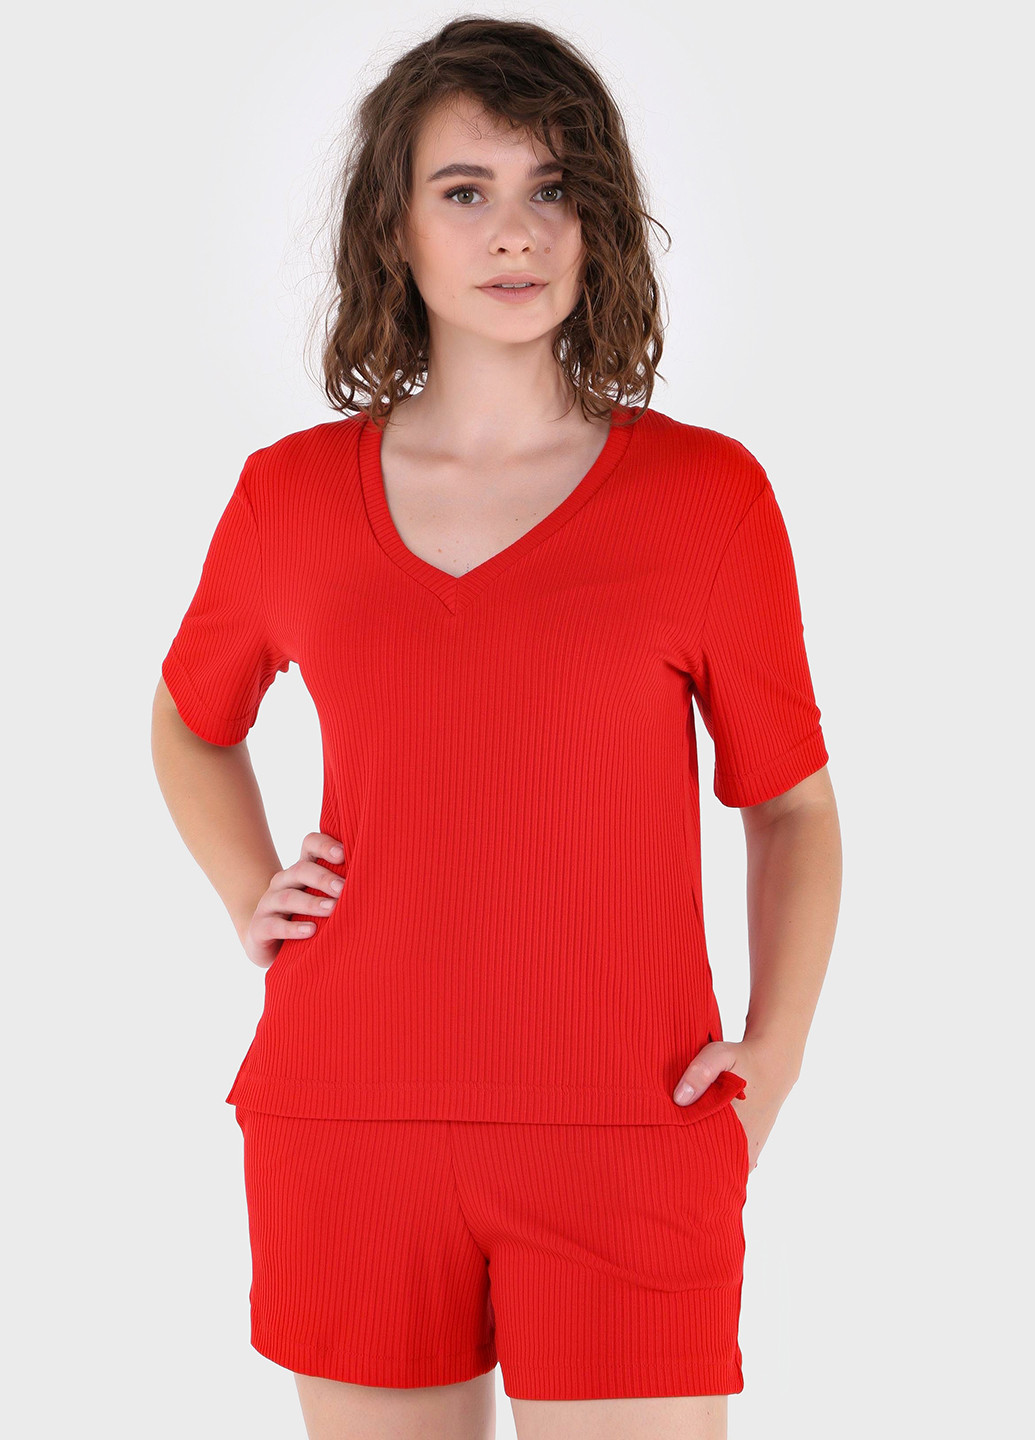 Красная летняя легкая футболка женская в рубчик 800000025 с коротким рукавом Merlini Корунья